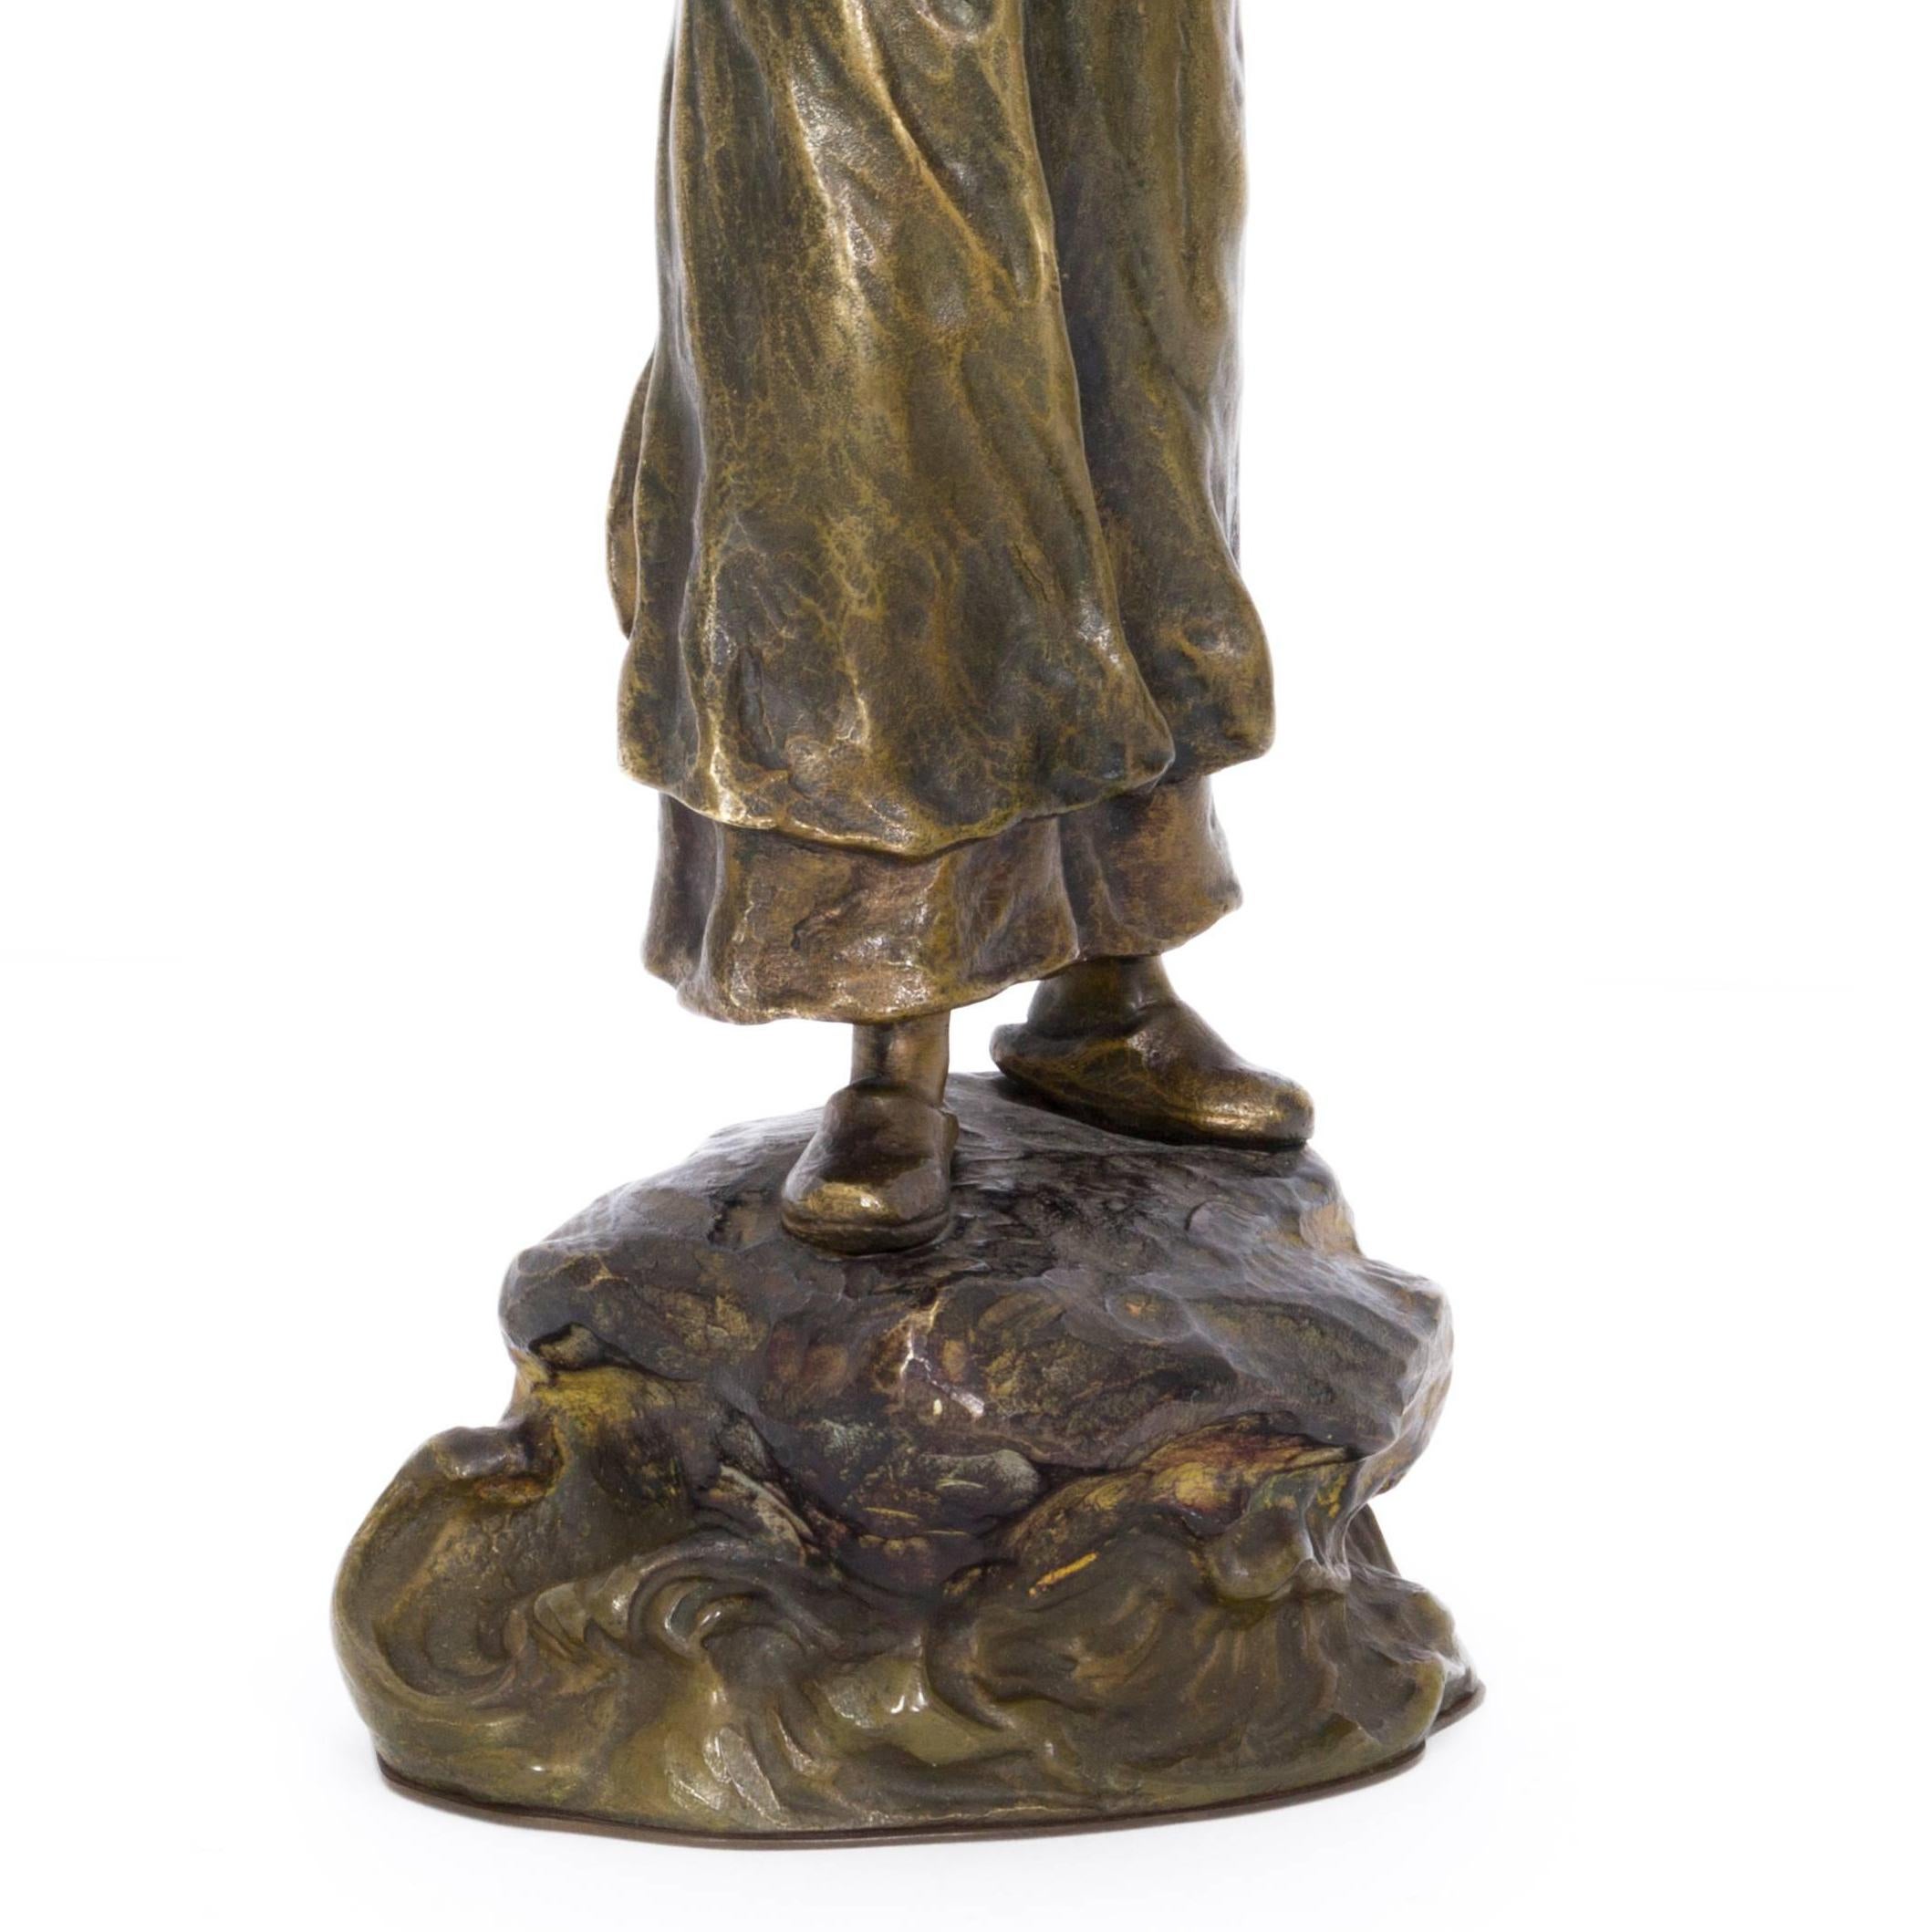 Bäuerin mit Kleinkind (Farmwoman with Child) - Bronze, Rural, around 1900 - Gold Figurative Sculpture by Unknown